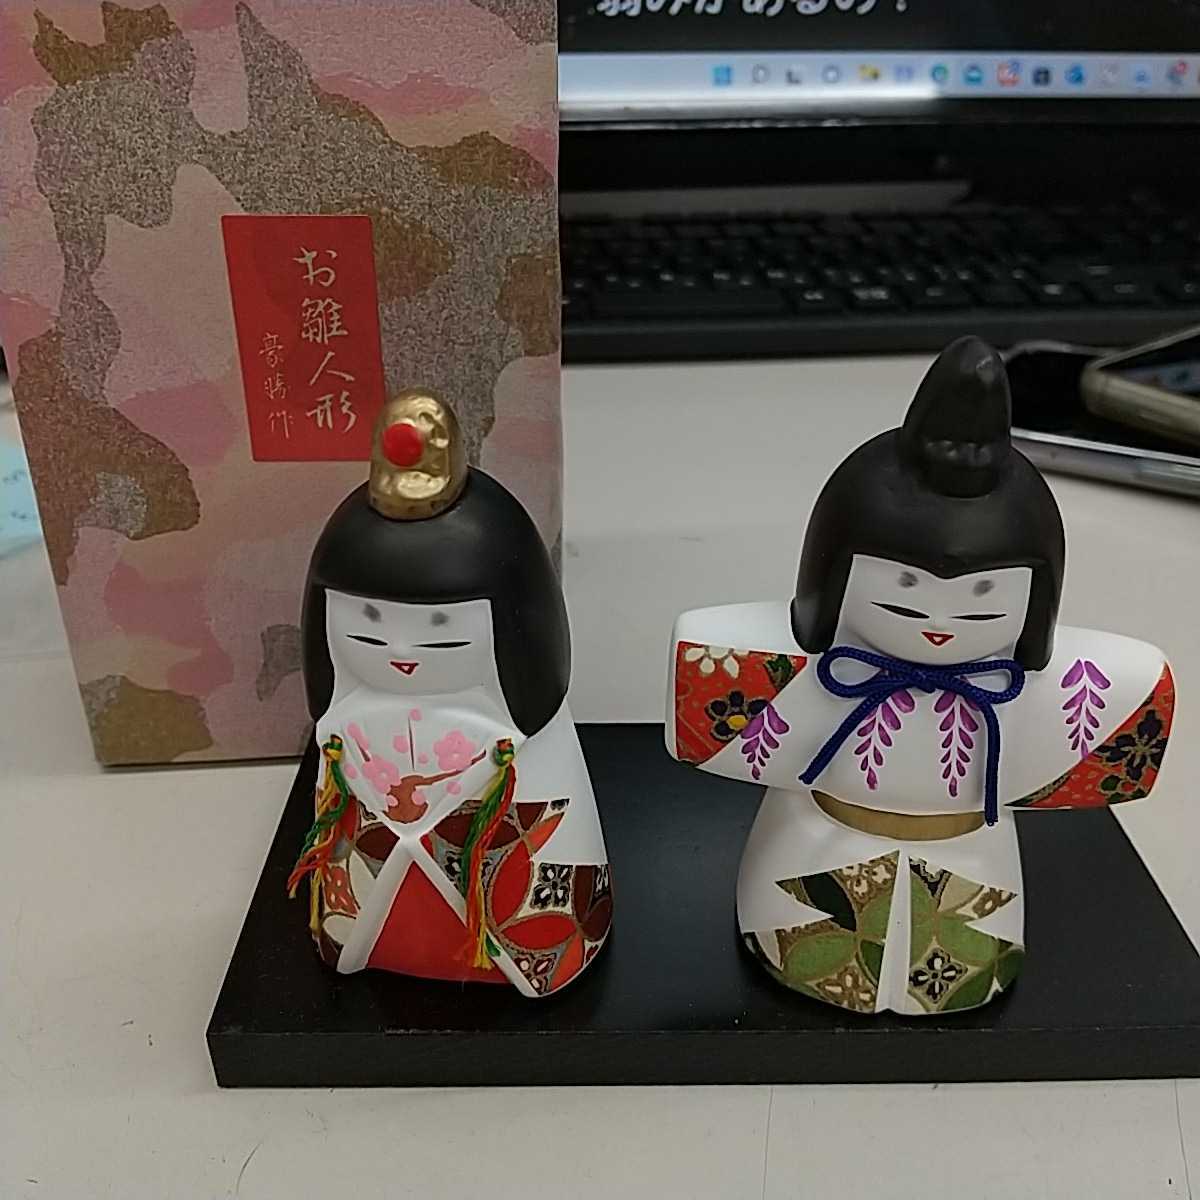 N6466 [सुंदर] गोशो द्वारा बनाई गई हिना गुड़िया, क्योटो, मौसम, वार्षिक कार्यक्रम, गुड़िया का त्यौहार, हिना गुड़िया